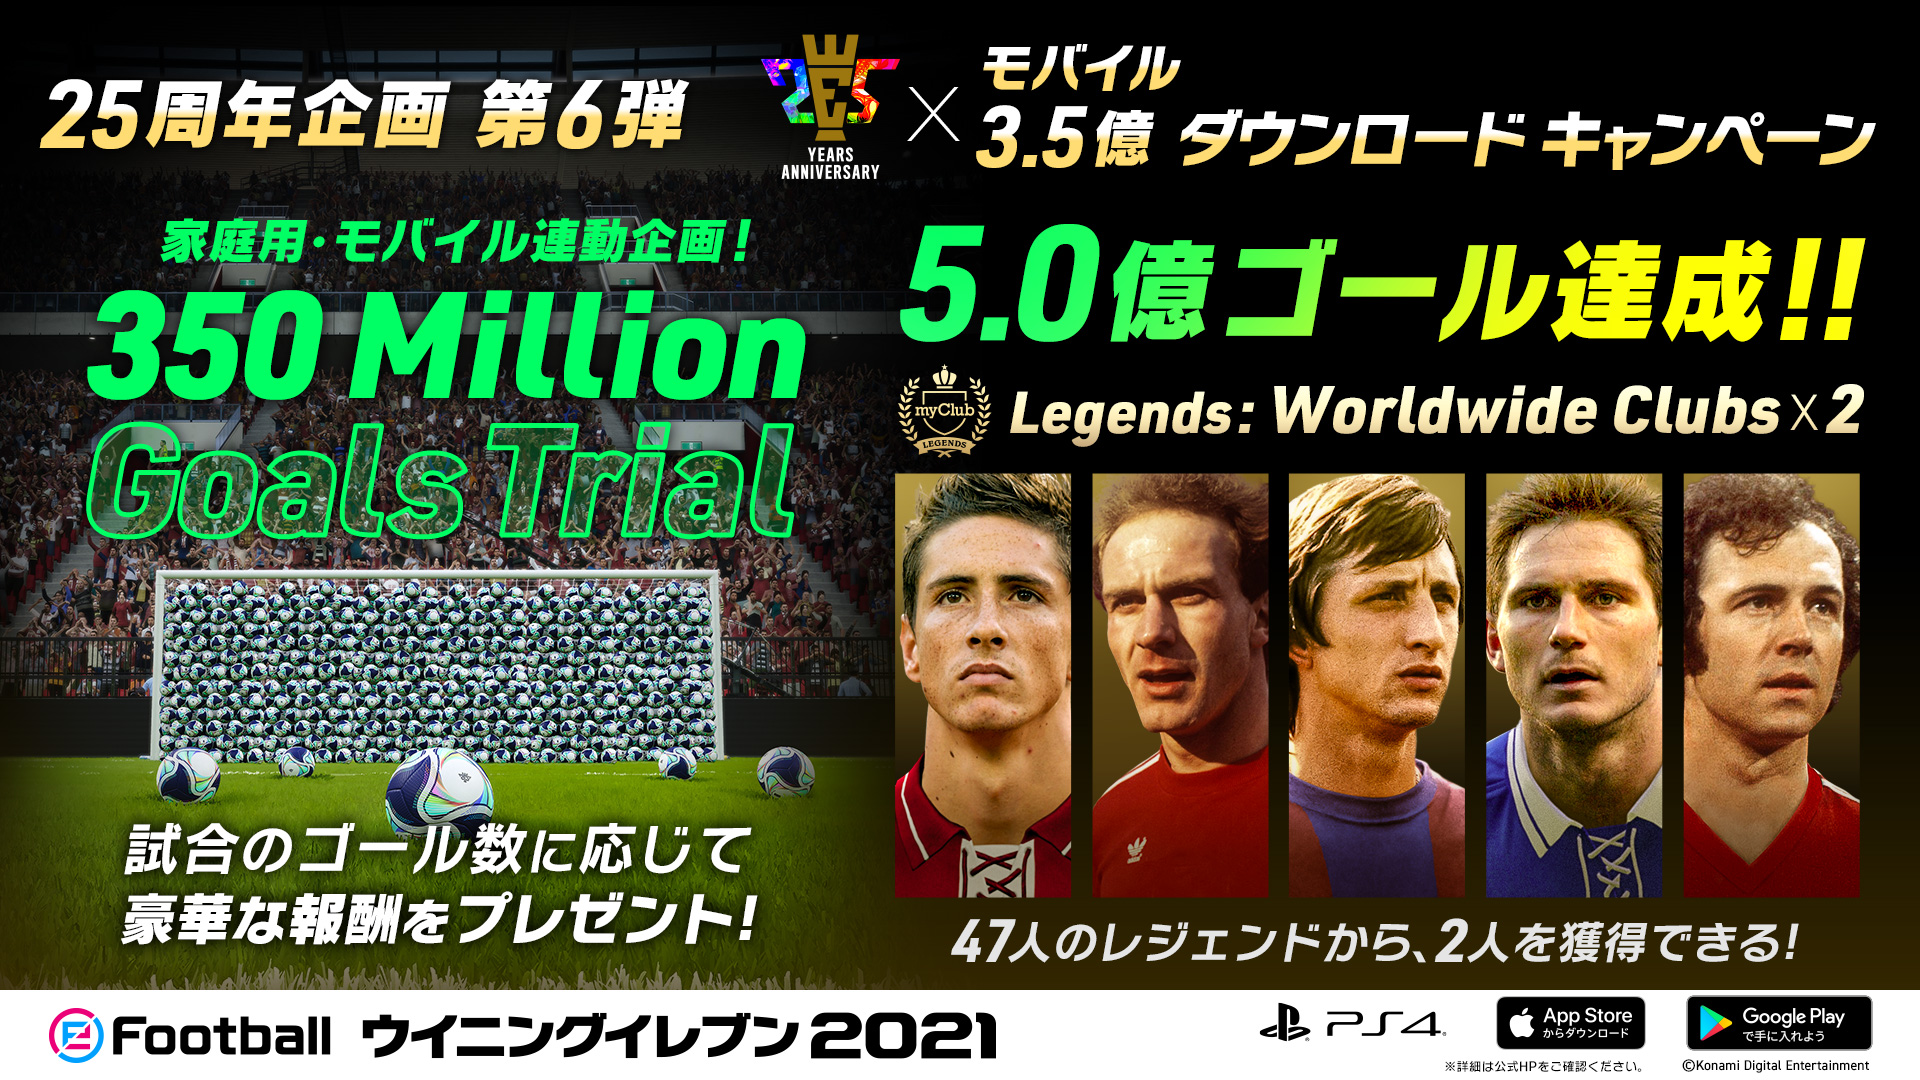 ウイニングイレブン 350 Million Goals Trial 続報 世界中のユーザーのゴール数が 5億ゴールを達成しました 期間中にお楽しみいただいた皆様へ感謝を込めて レジェンドが2名獲得できる Legends Worldwide Clubs 2 を追加で